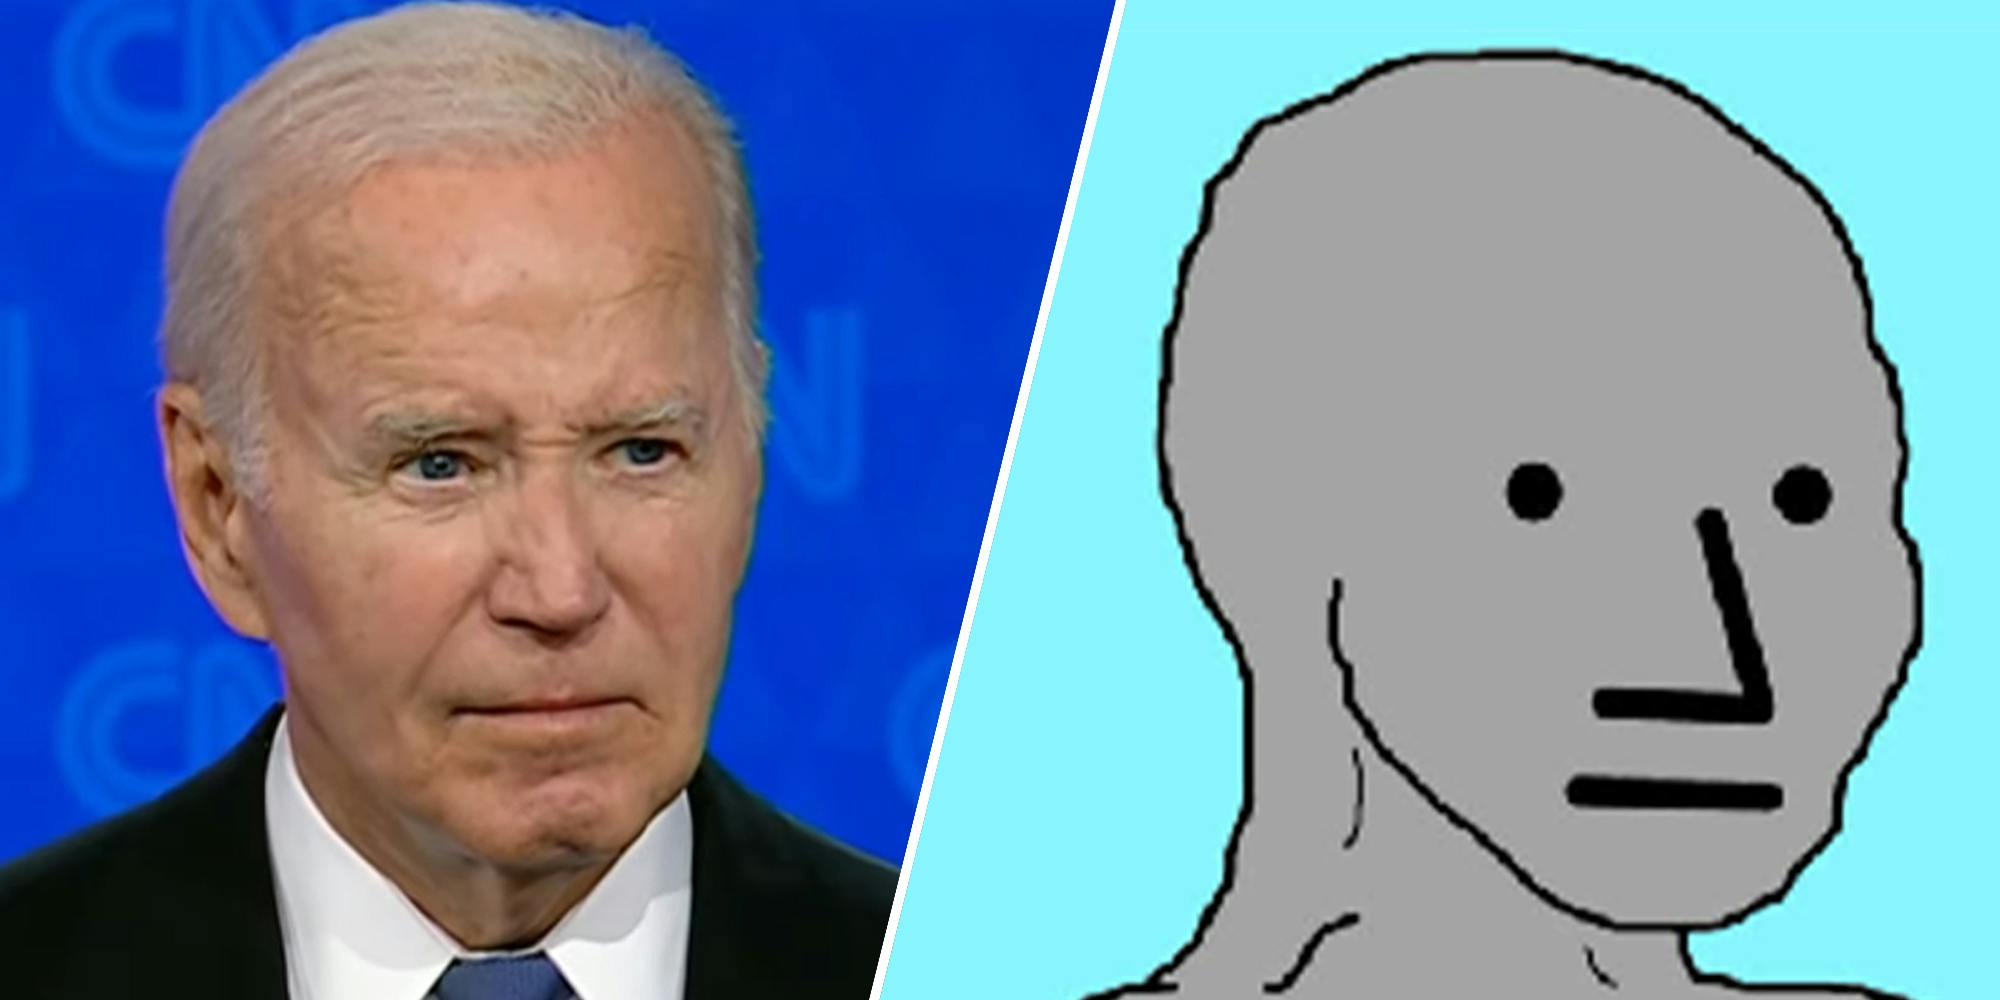 ‘It’s actually so over:’ The face that became the Joe Biden debate meme